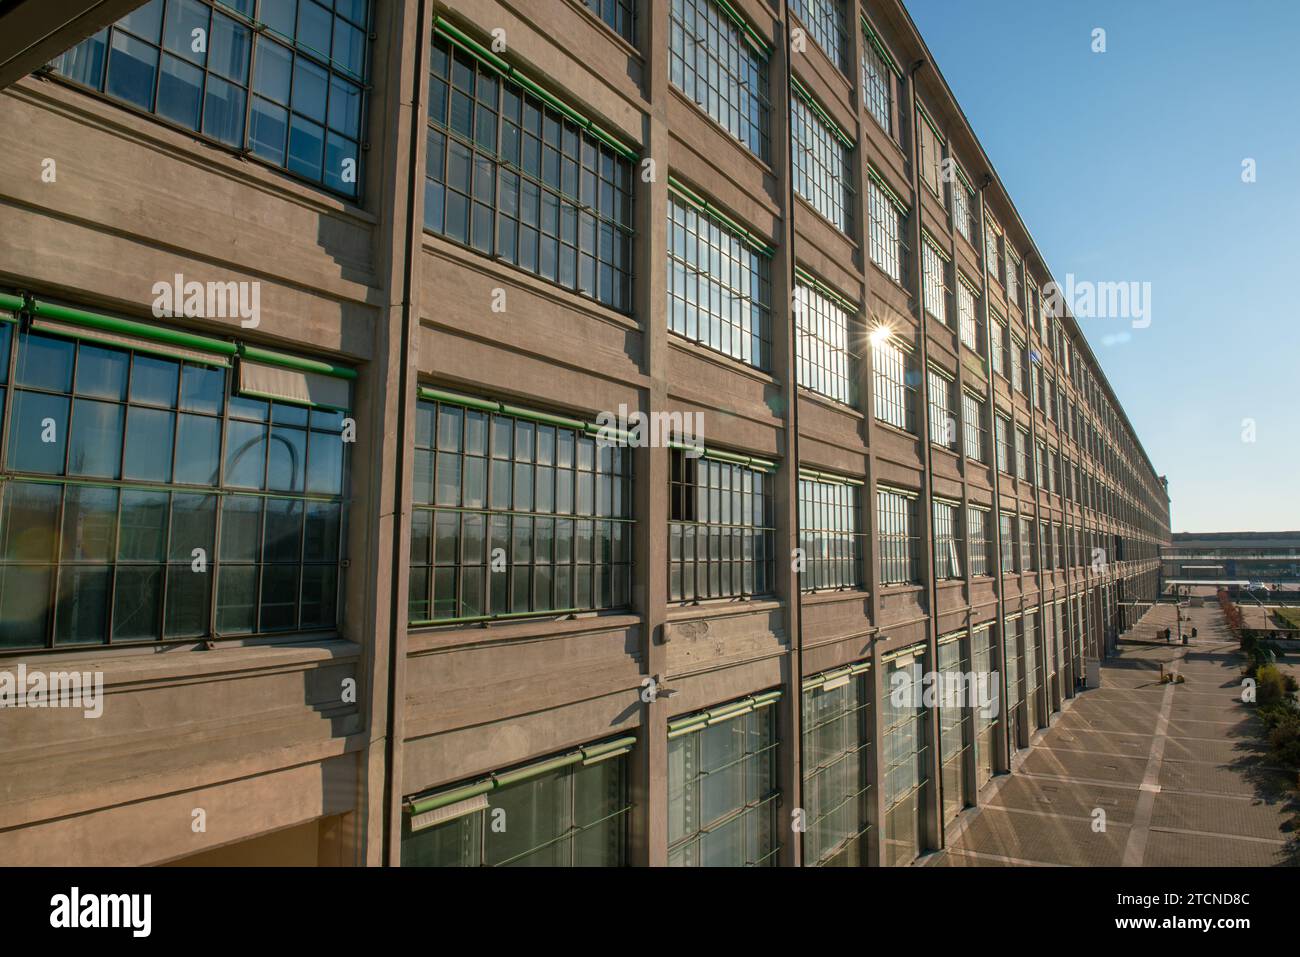 Architettura post-industriale, edificio storico della fabbrica automobilistica italiana di Torino, Fiat, chiamata Lingotto, riqualificata con Renzo piano. facciata. Foto Stock